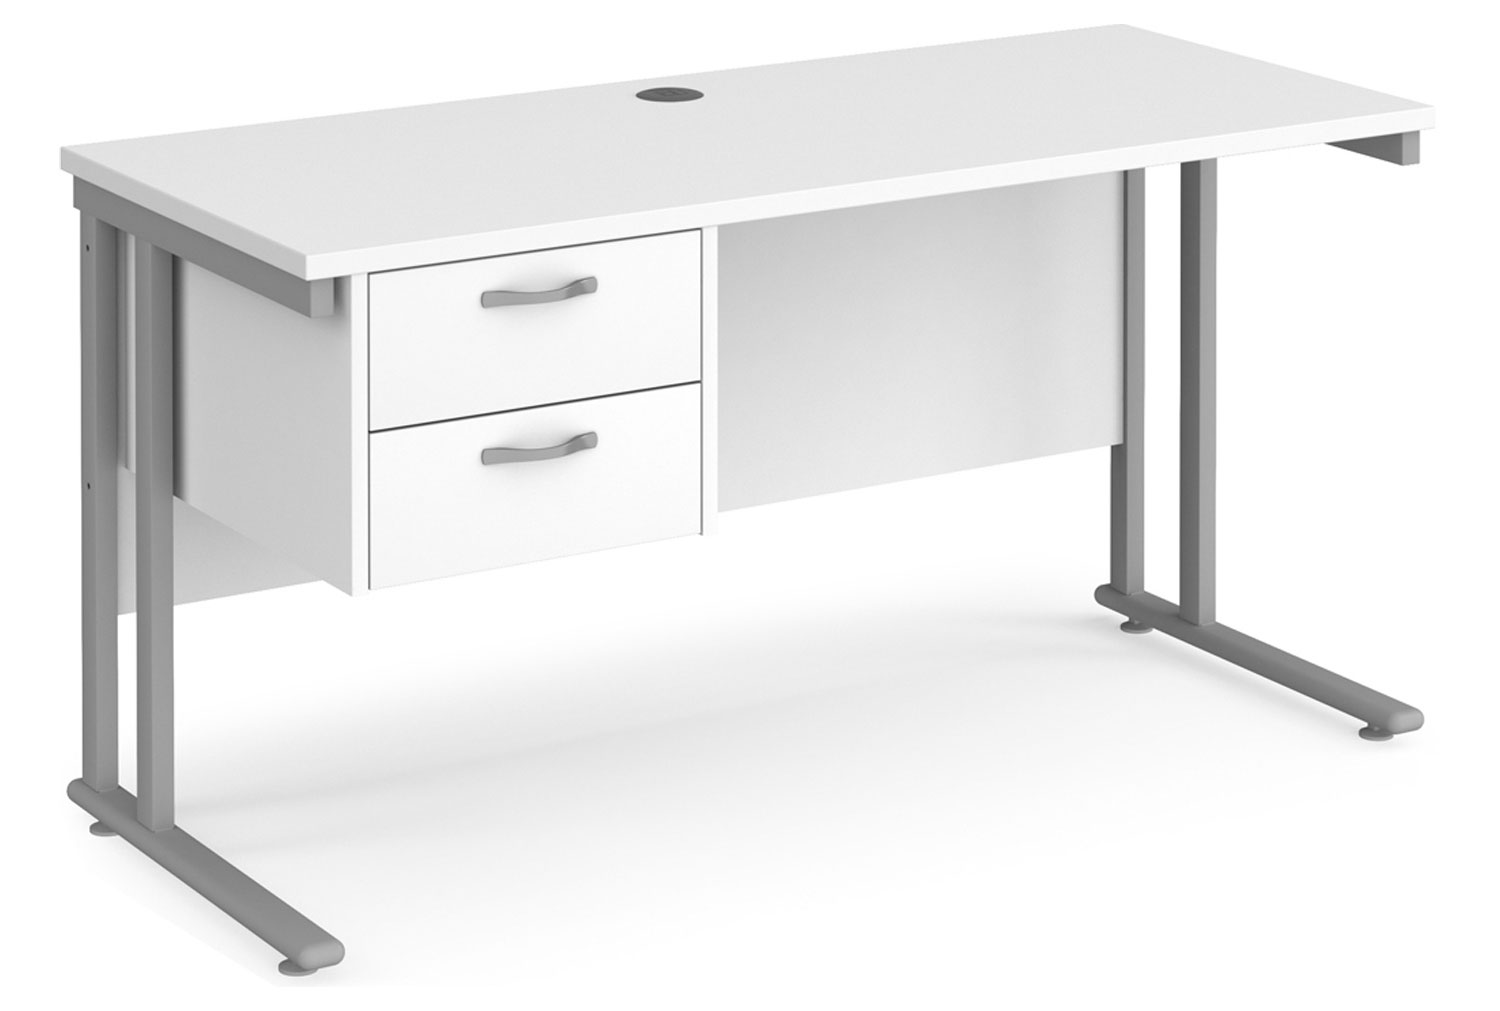 Value Line Deluxe C-Leg Narrow Rectangular Office Desk 2 Drawers (Silver Legs), 140wx60dx73h (cm), White